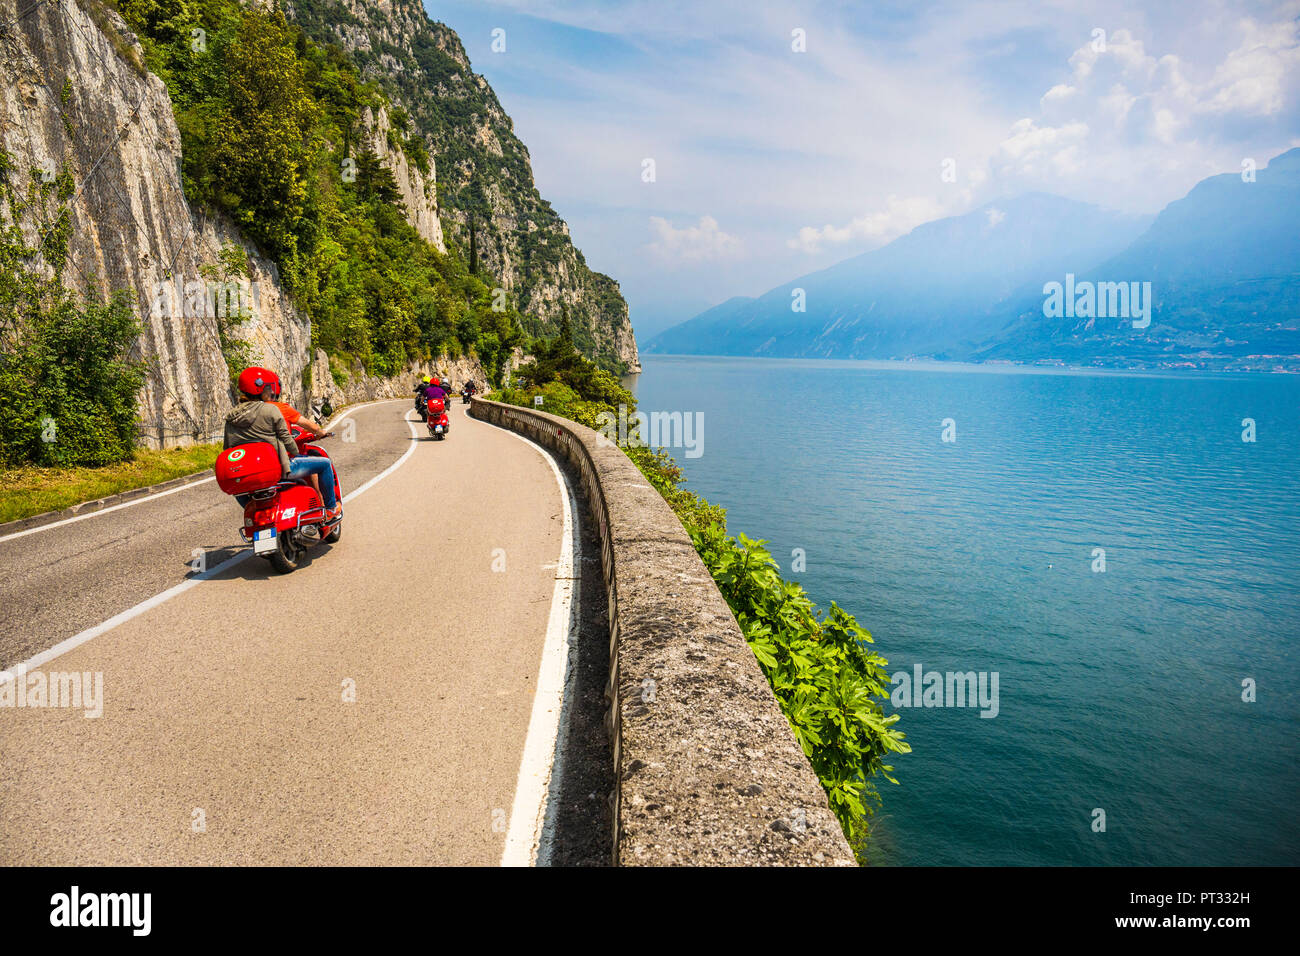 Carretera Escénica SS45 en la costa oeste del Lago de Garda, cerca de Tremosine, provincia de Brescia, Lombardía, Italia Foto de stock